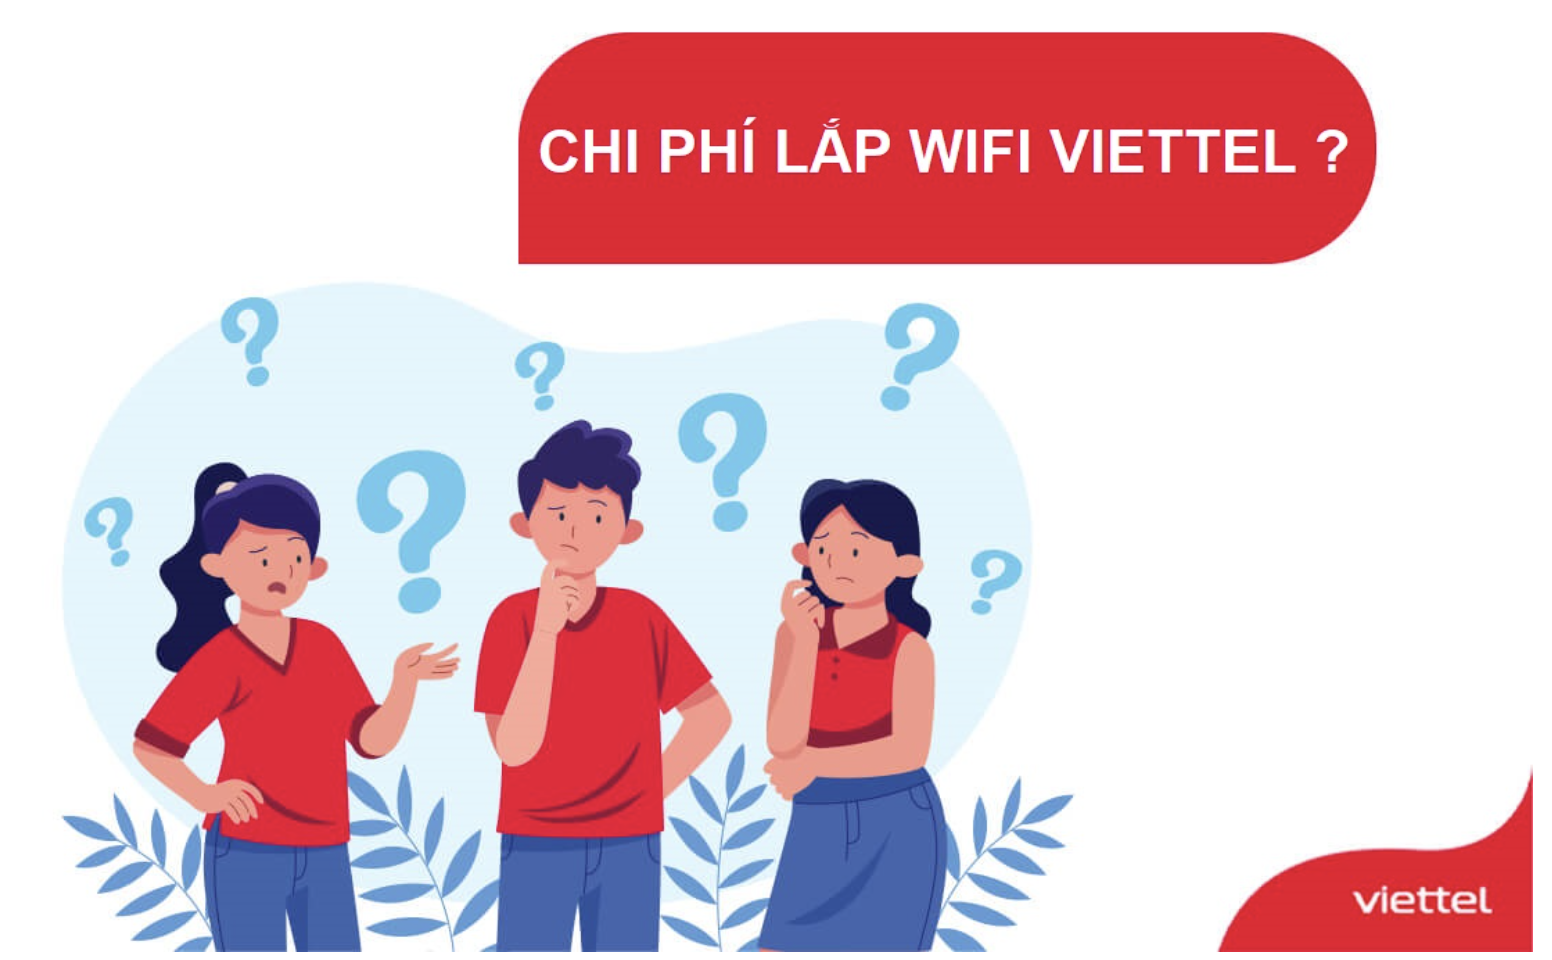 Phí lắp wifi viettel bao nhiêu tiền 1 tháng phụ thuộc vào nhu cầu của khách hàng